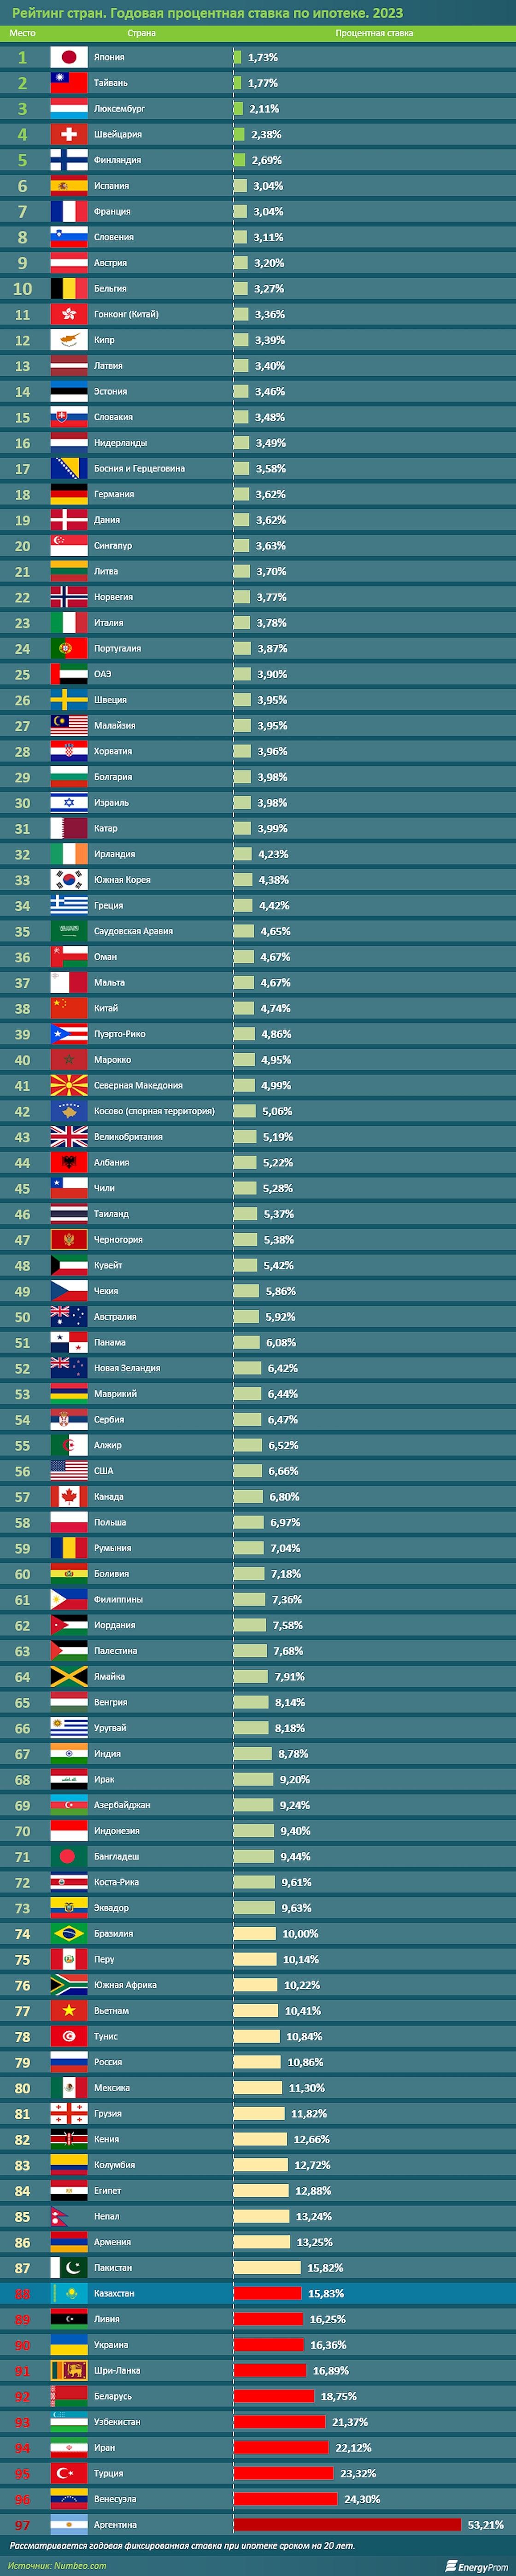 Рейтинг стран мира по размеру ипотечной ставки